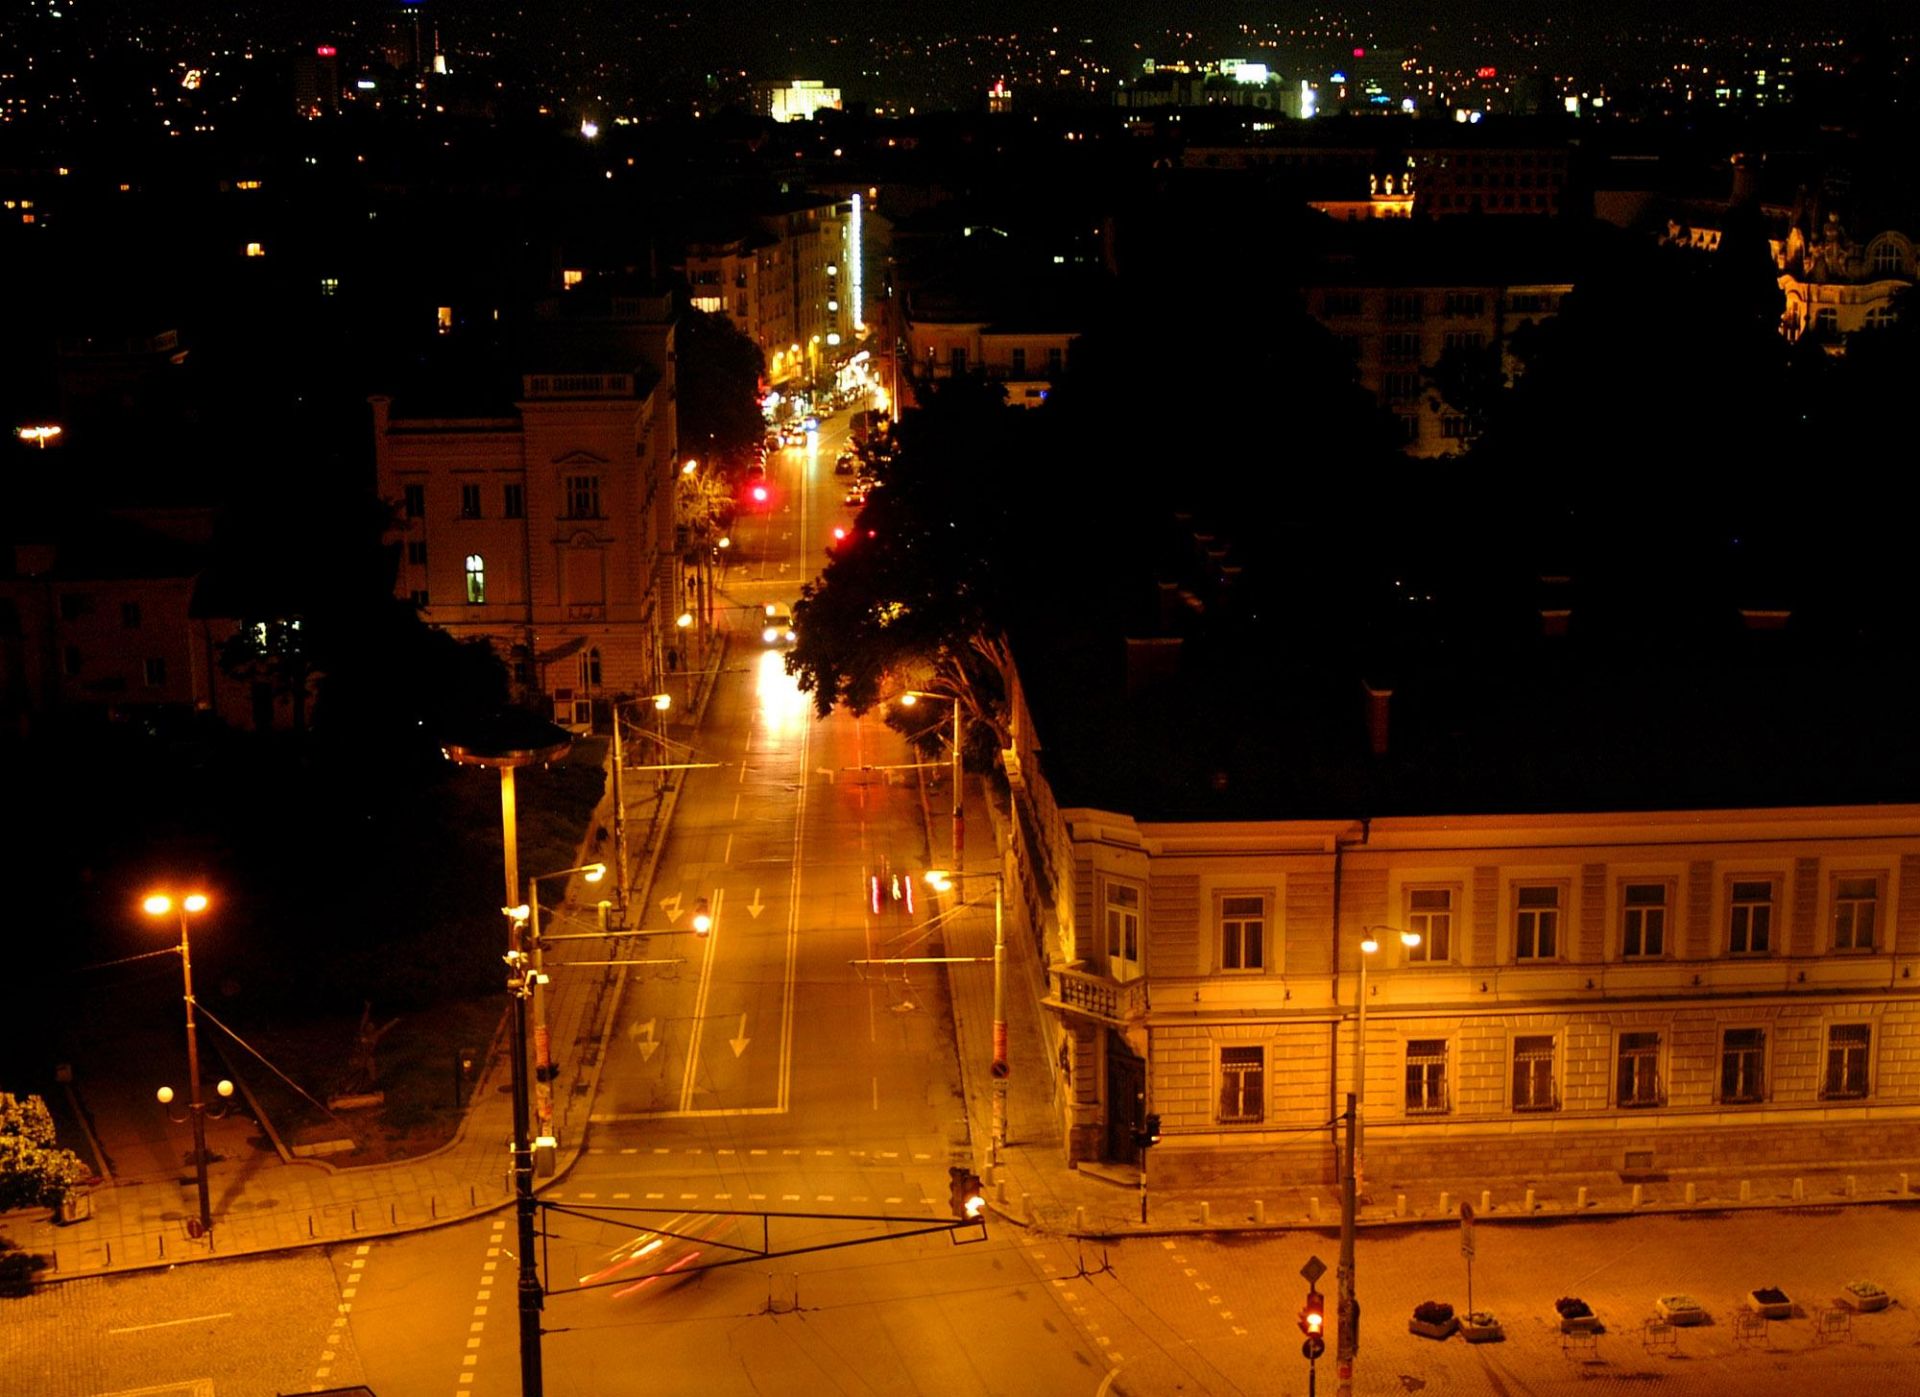 Няколко нощни заведения в центъра на София и в "Студентски град" са работили през изминалата нощ въпреки забраната